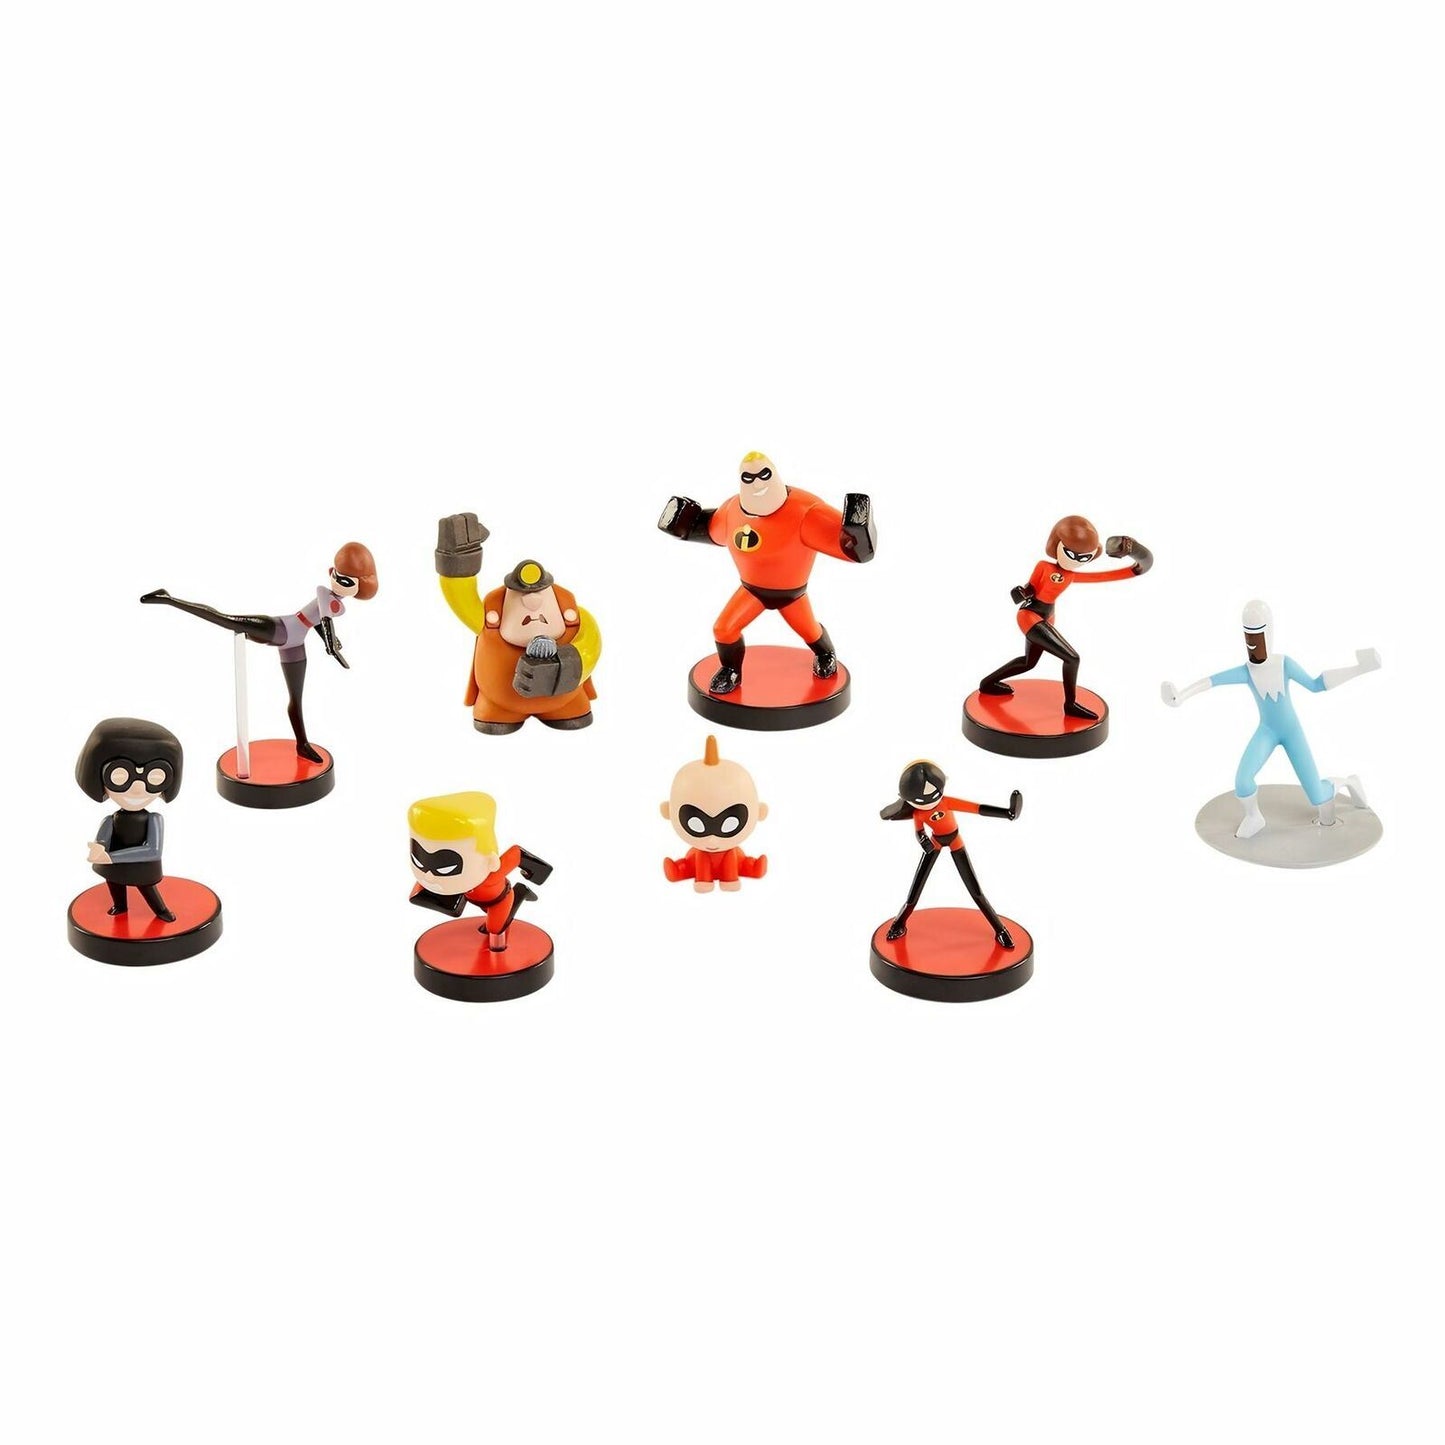 Jakks INCREDIBLES 2 Disney Pixar Mini-Figures Mystery Blind Box Toy [1 Box]